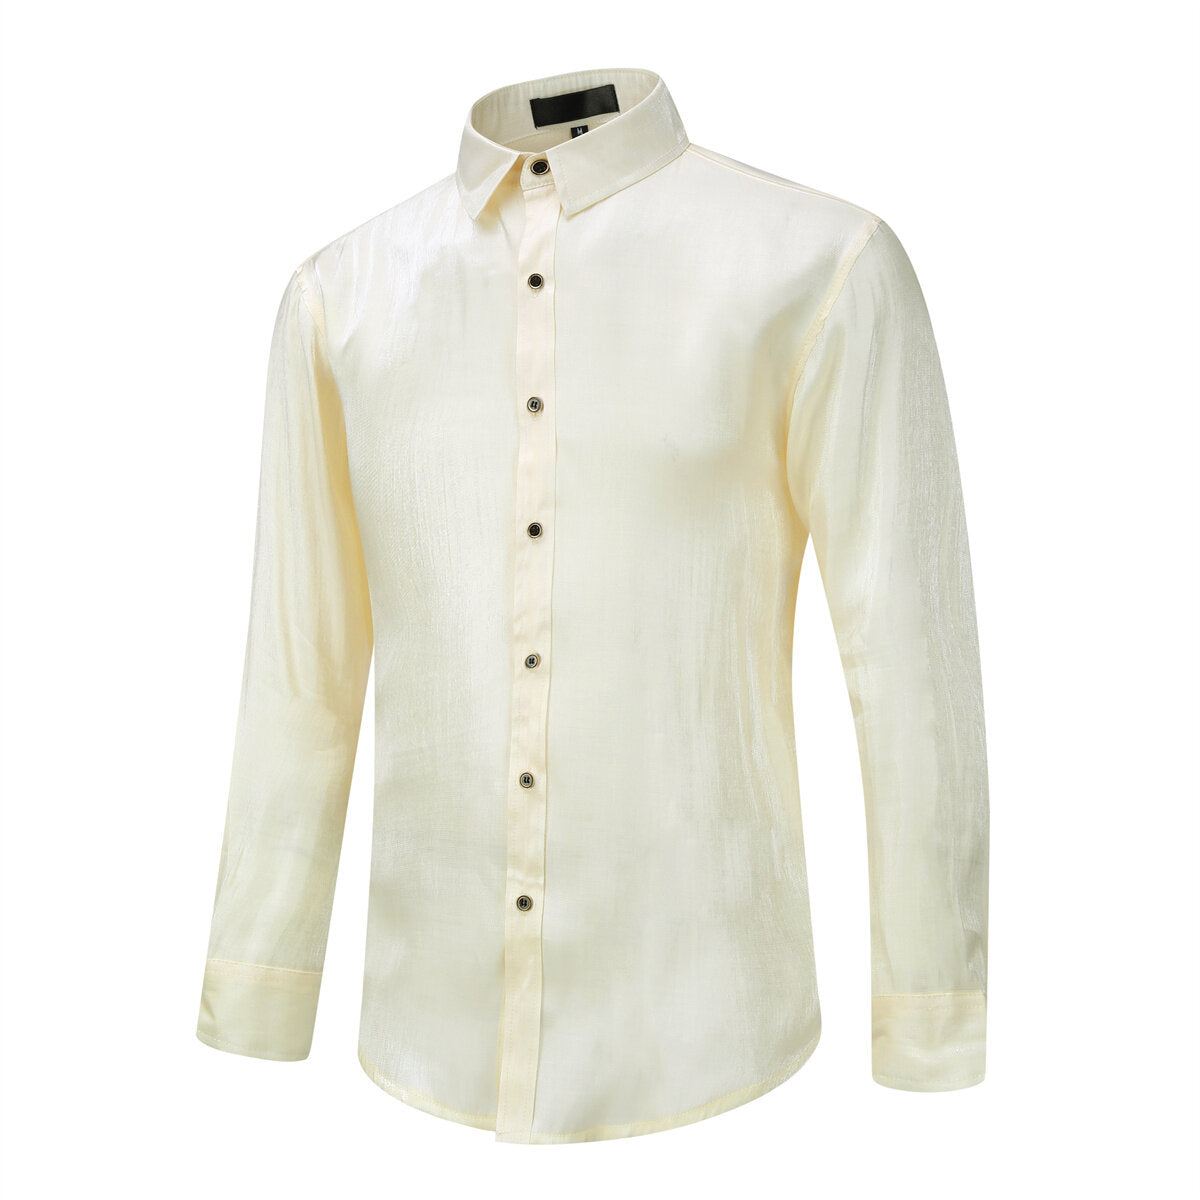 Men's Solid Color Silk Comfort Long Sleeve Shirt Beige